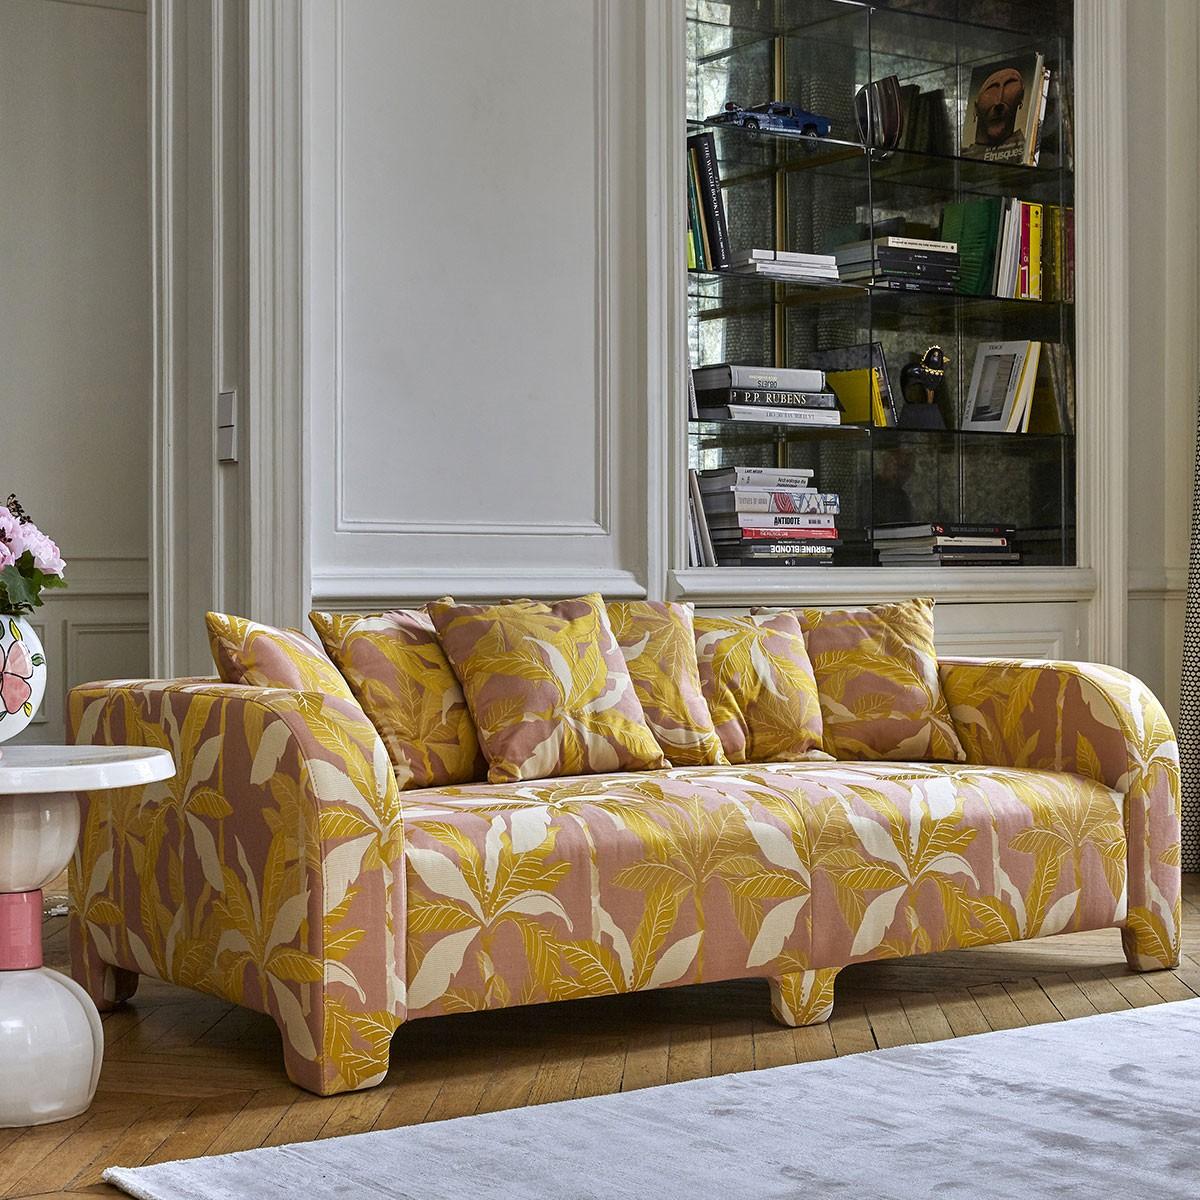 Popus Editions Graziella 4-Seater Sofa in Marina Venice Chenille Velvet Fabric In New Condition For Sale In Paris, FR